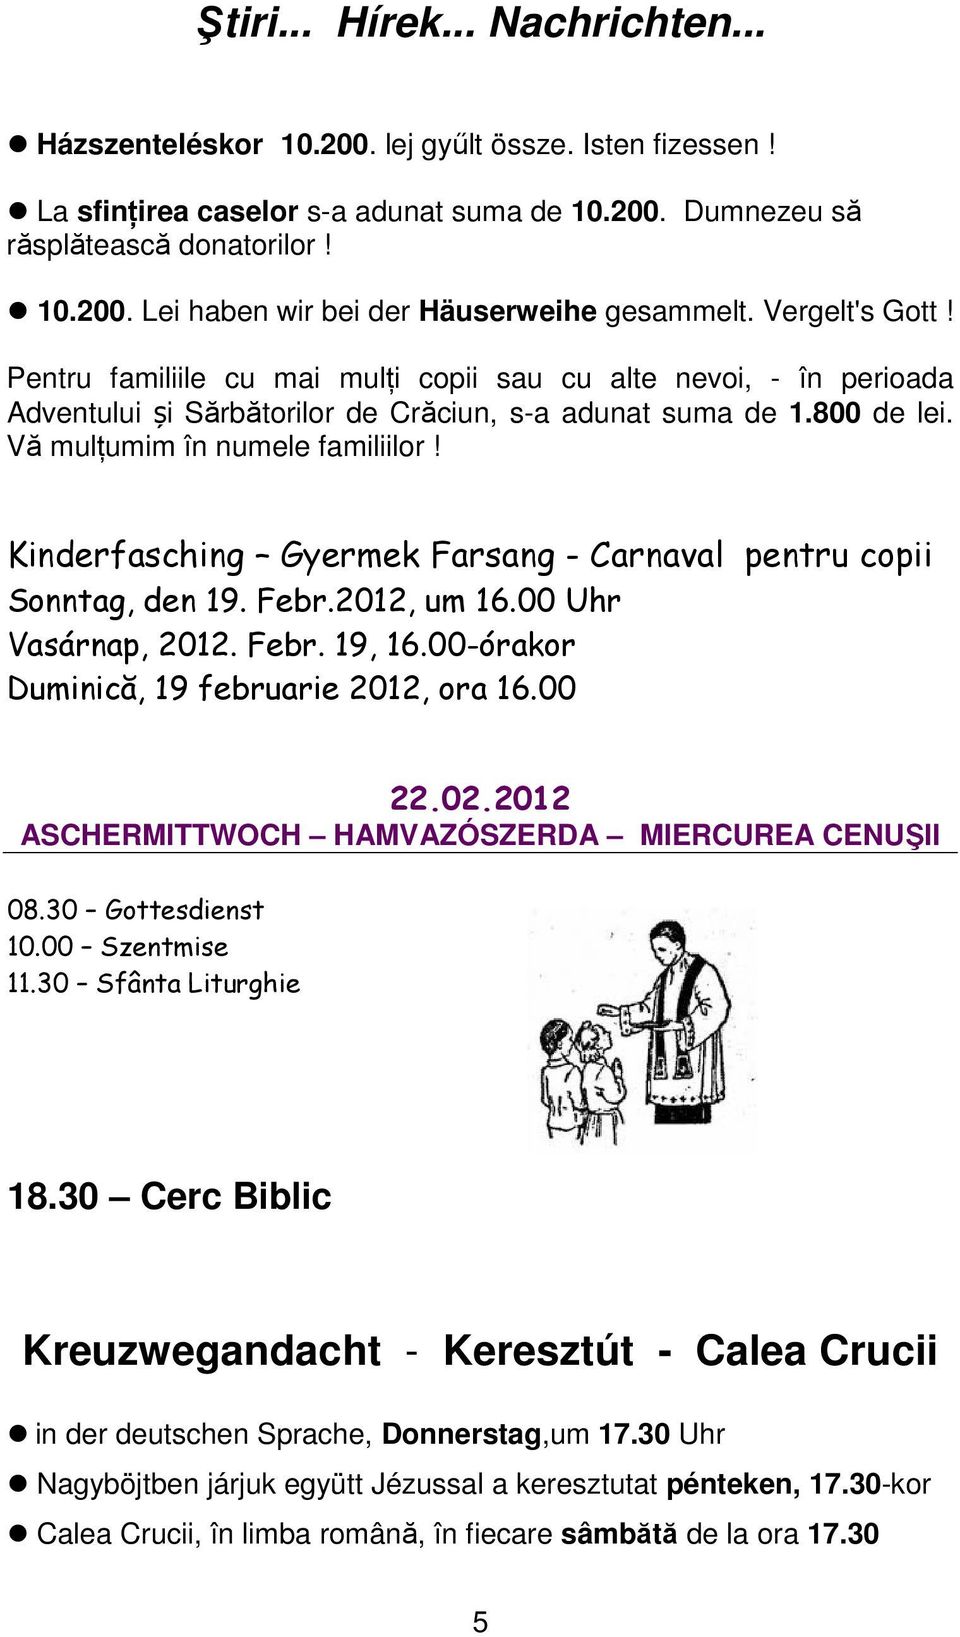 Kinderfasching Gyermek Farsang - Carnaval pentru copii Sonntag, den 19. Febr.2012, um 16.00 Uhr Vasárnap, 2012. Febr. 19, 16.00-órakor Duminică, 19 februarie 2012, ora 16.00 22.02.